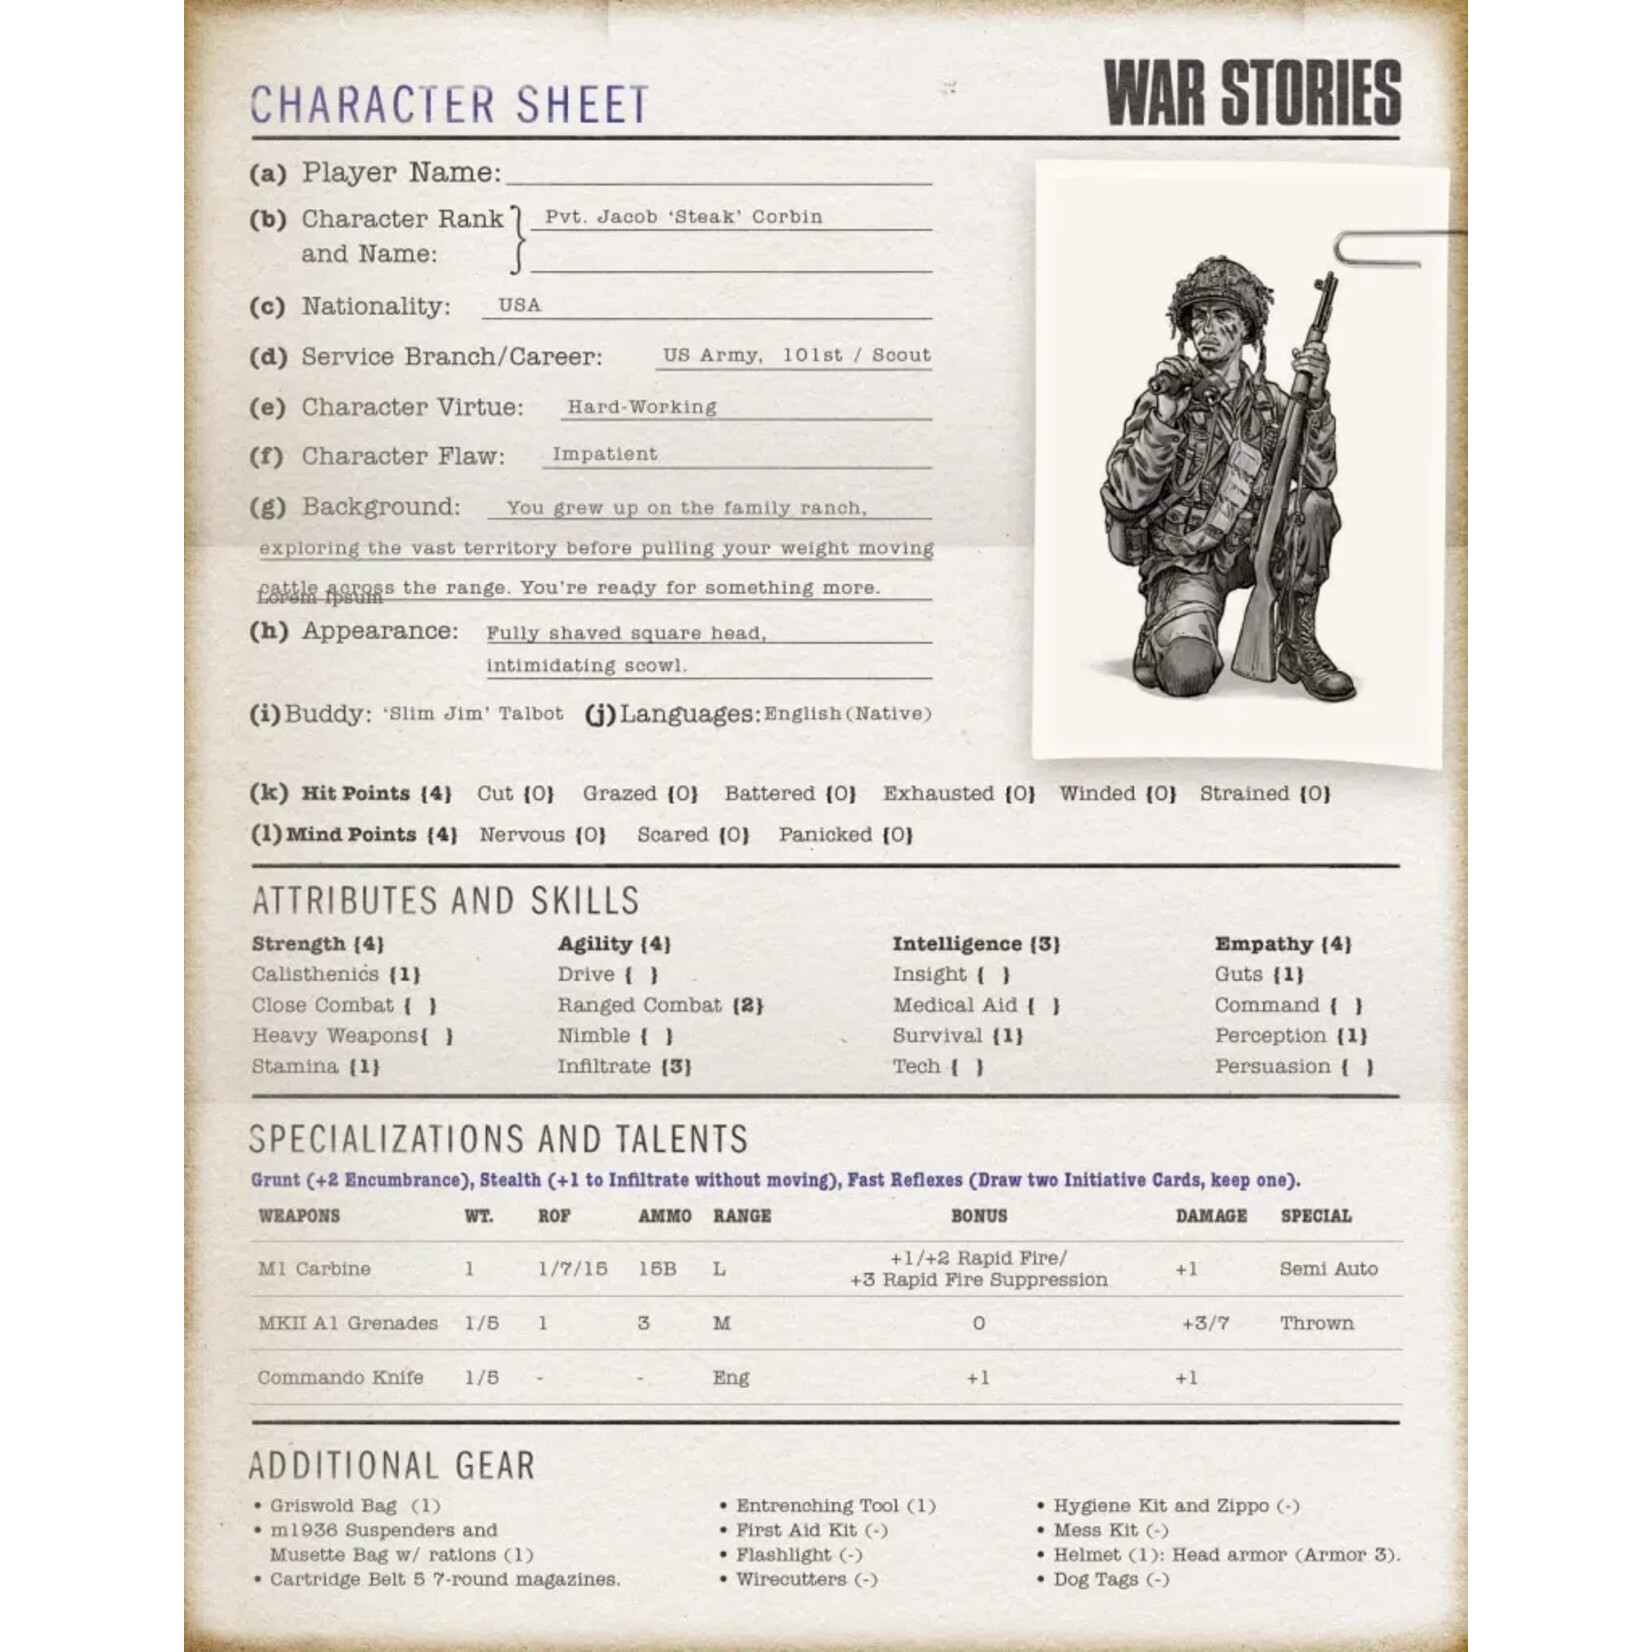 Firelock Games War Stories: A WW2 RPG